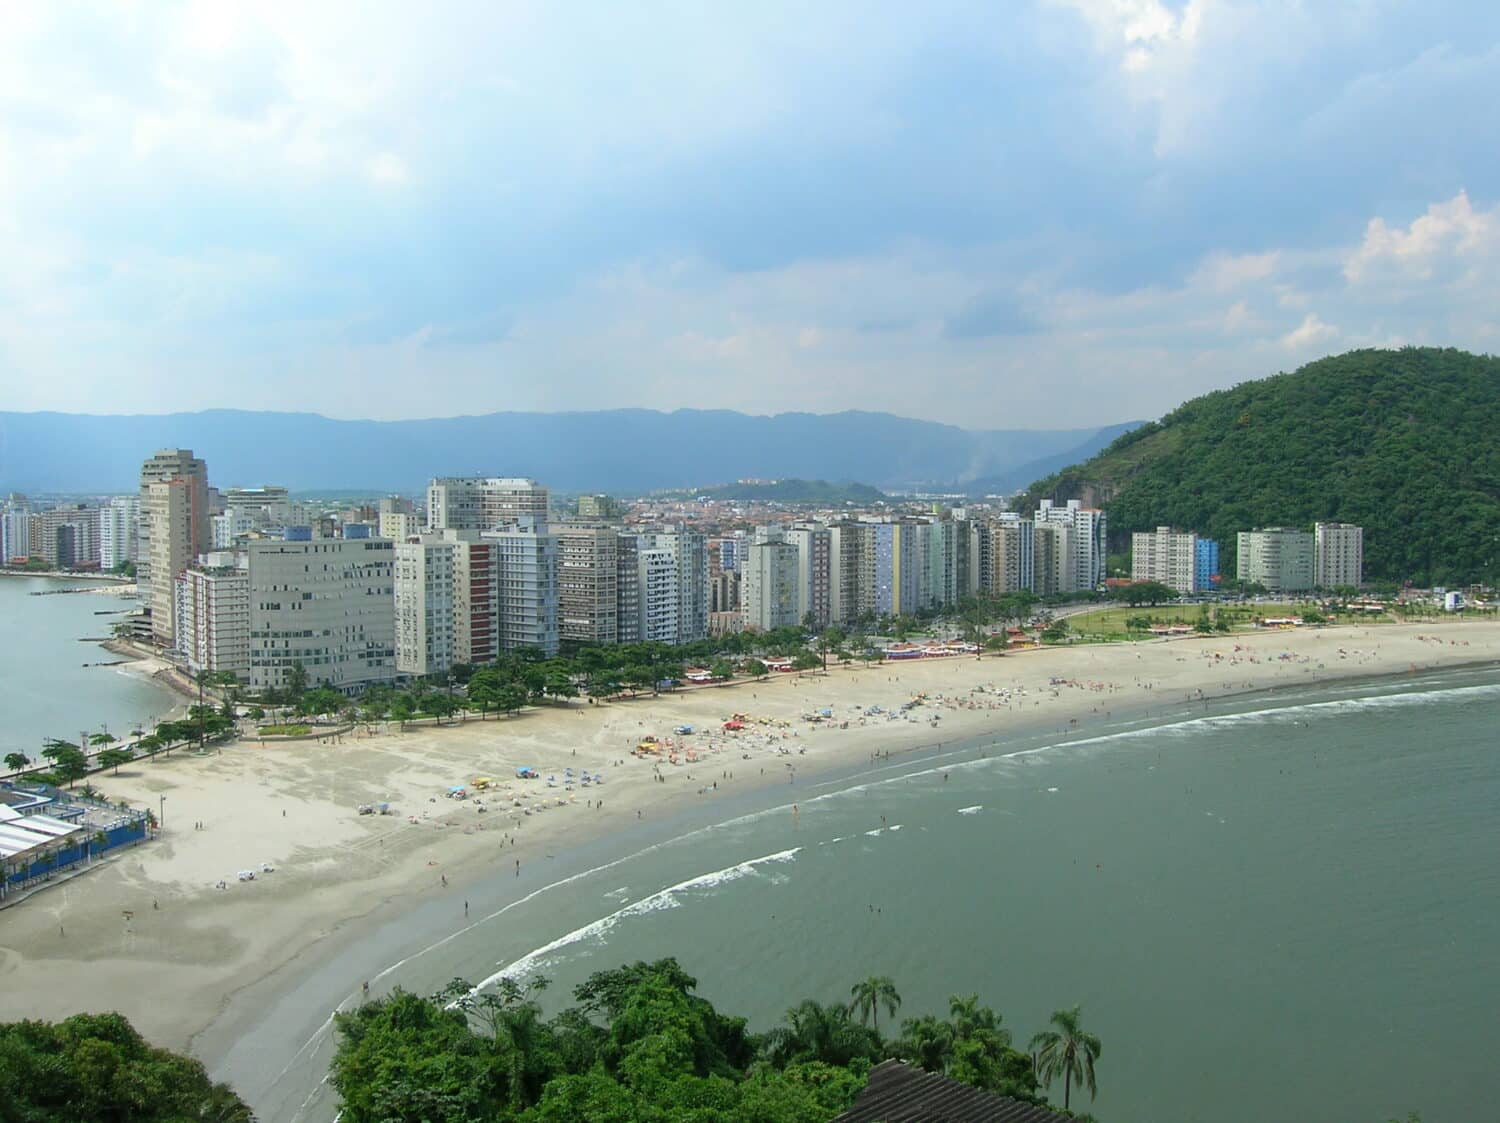 Orla de uma praia com muitos prédios e uma extensa faixa de areia, para representar hotéis em Santos